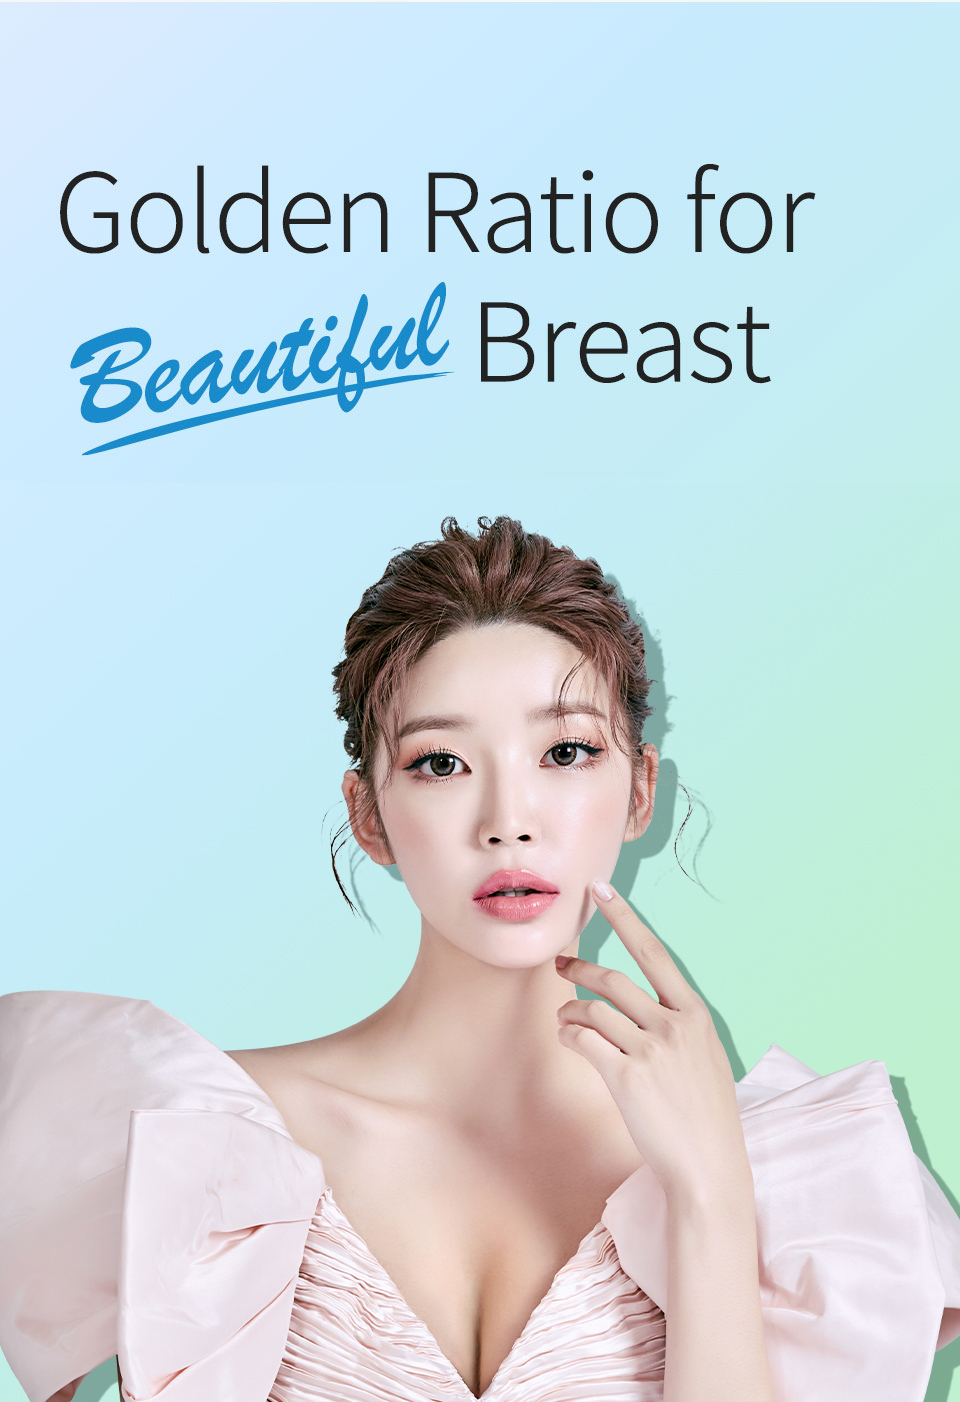 Teardrop Breast Surgery, Teardrop Breast Prosthesis in Seoul